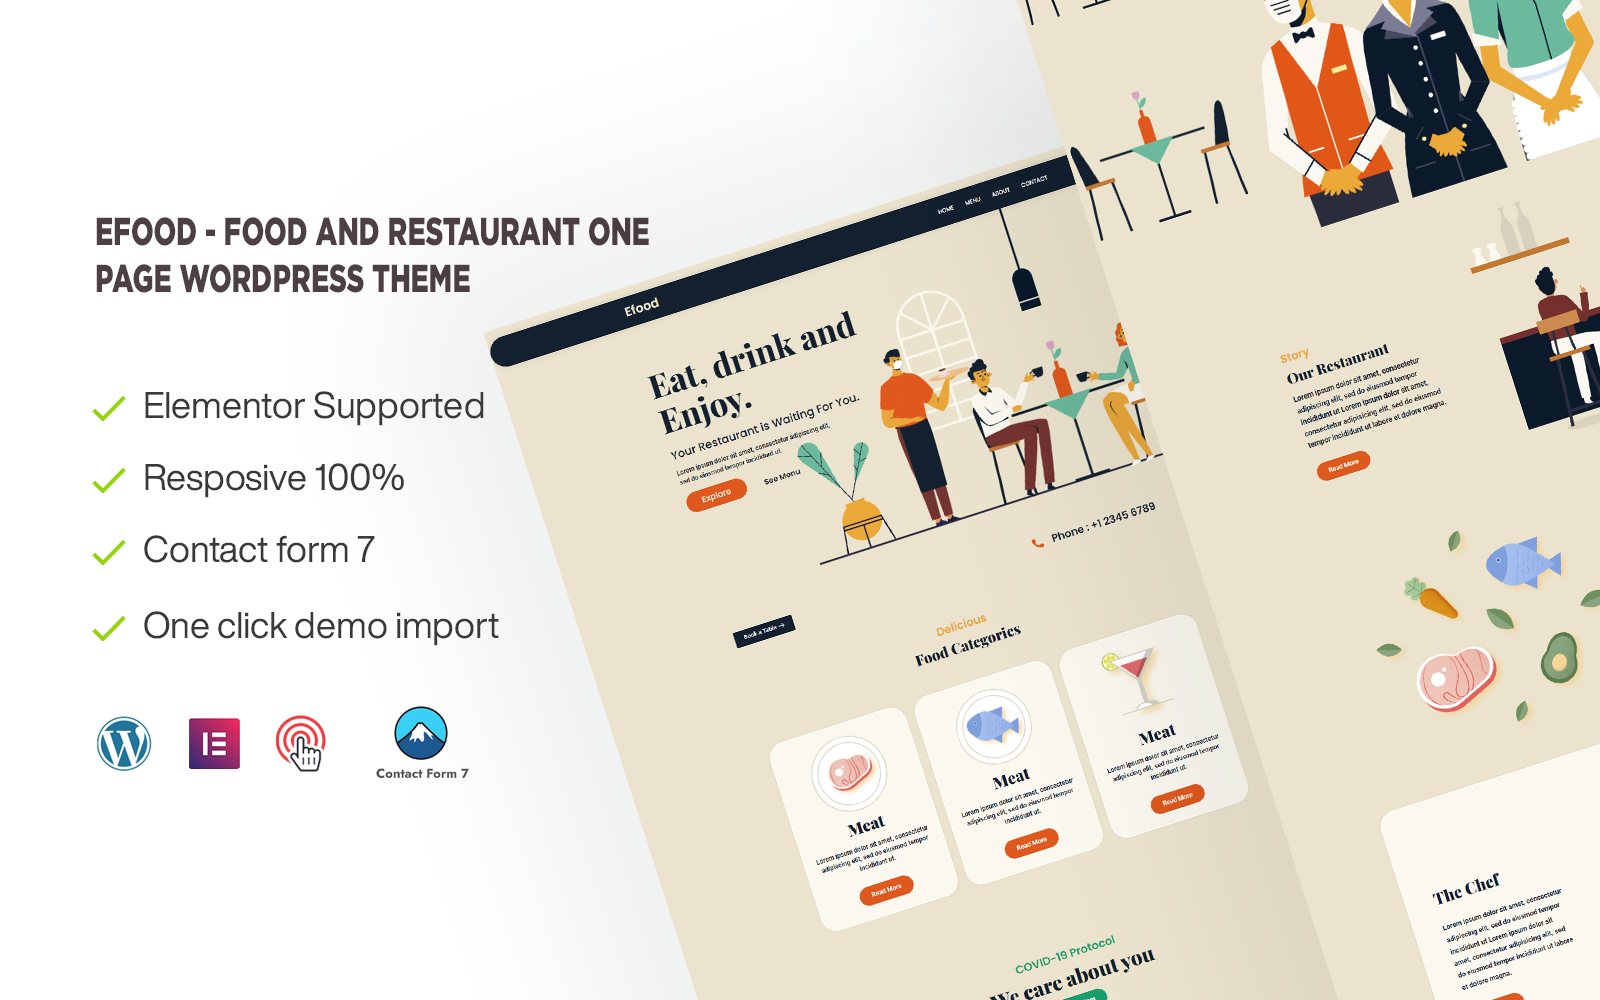 Шаблон Wordpress Efood - Food and Restaurant One Page Theme WordPress